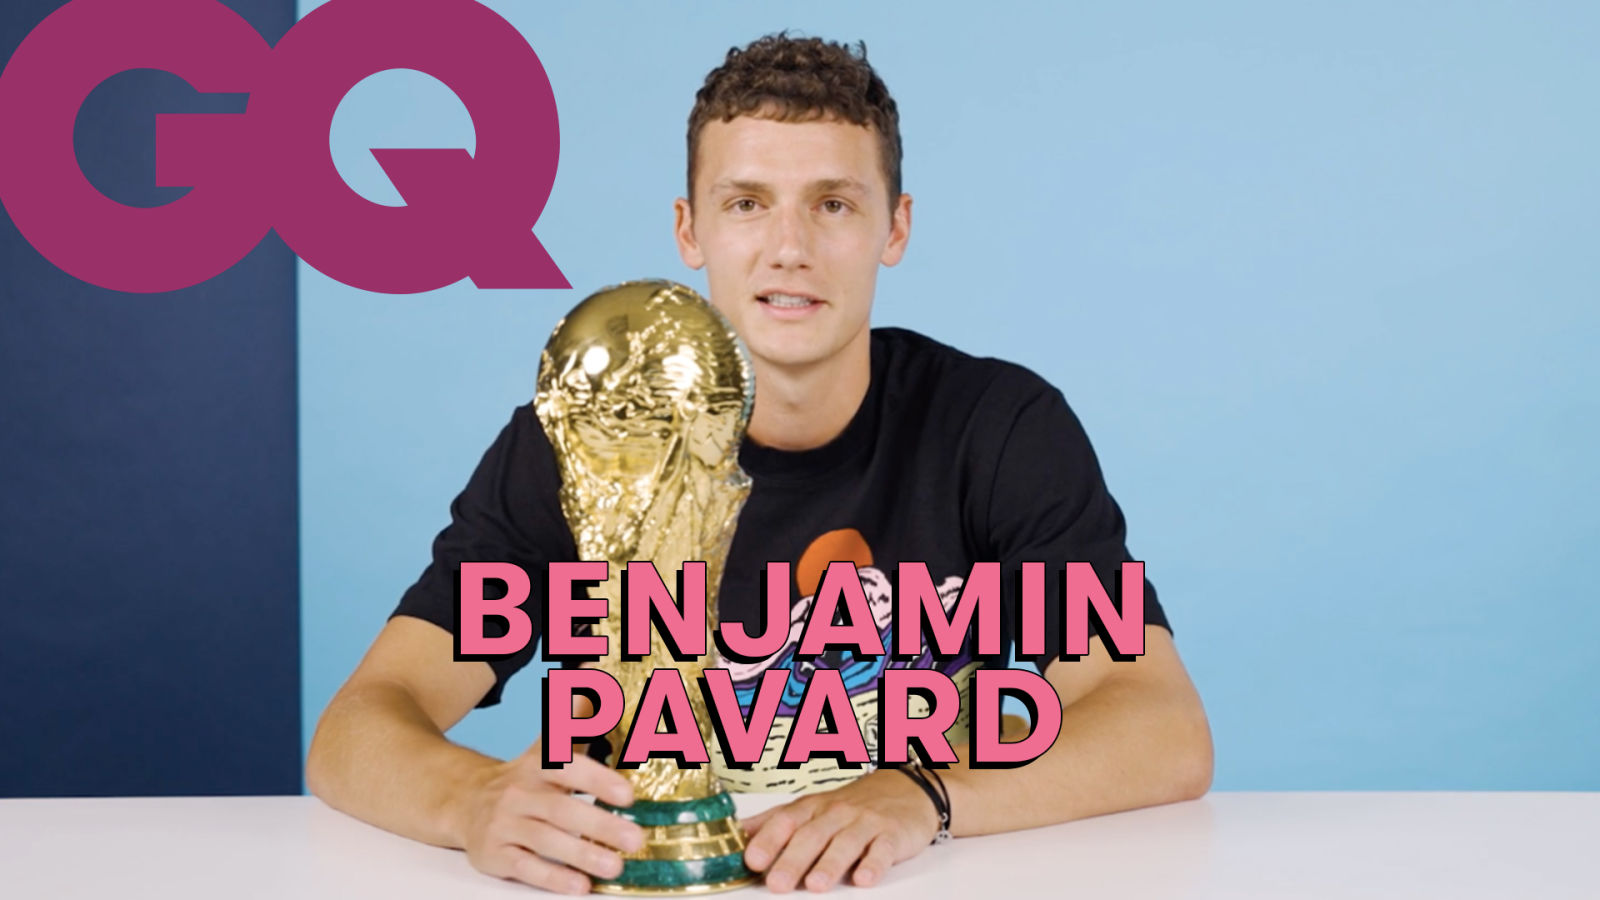 Les 10 essentiels de Benjamin Pavard (Coupe du monde, enceinte, lunettes de soleil…)